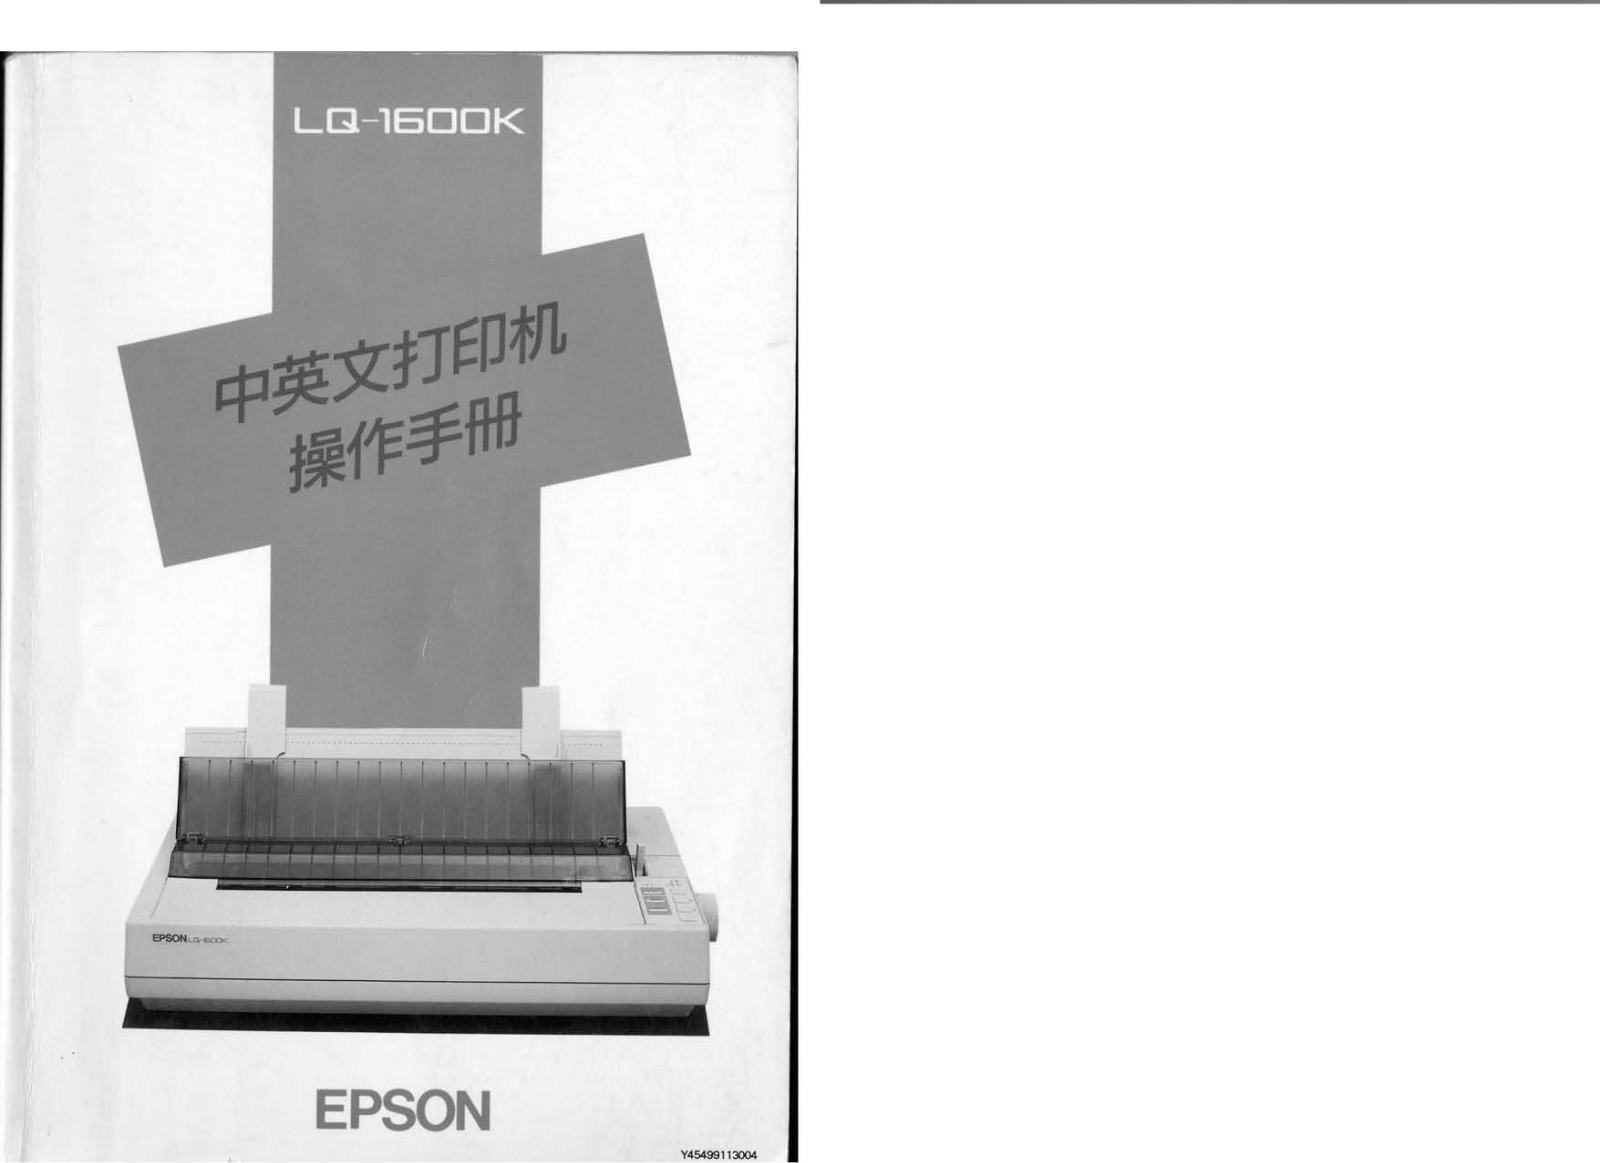 Epson LQ-1600K User Manual